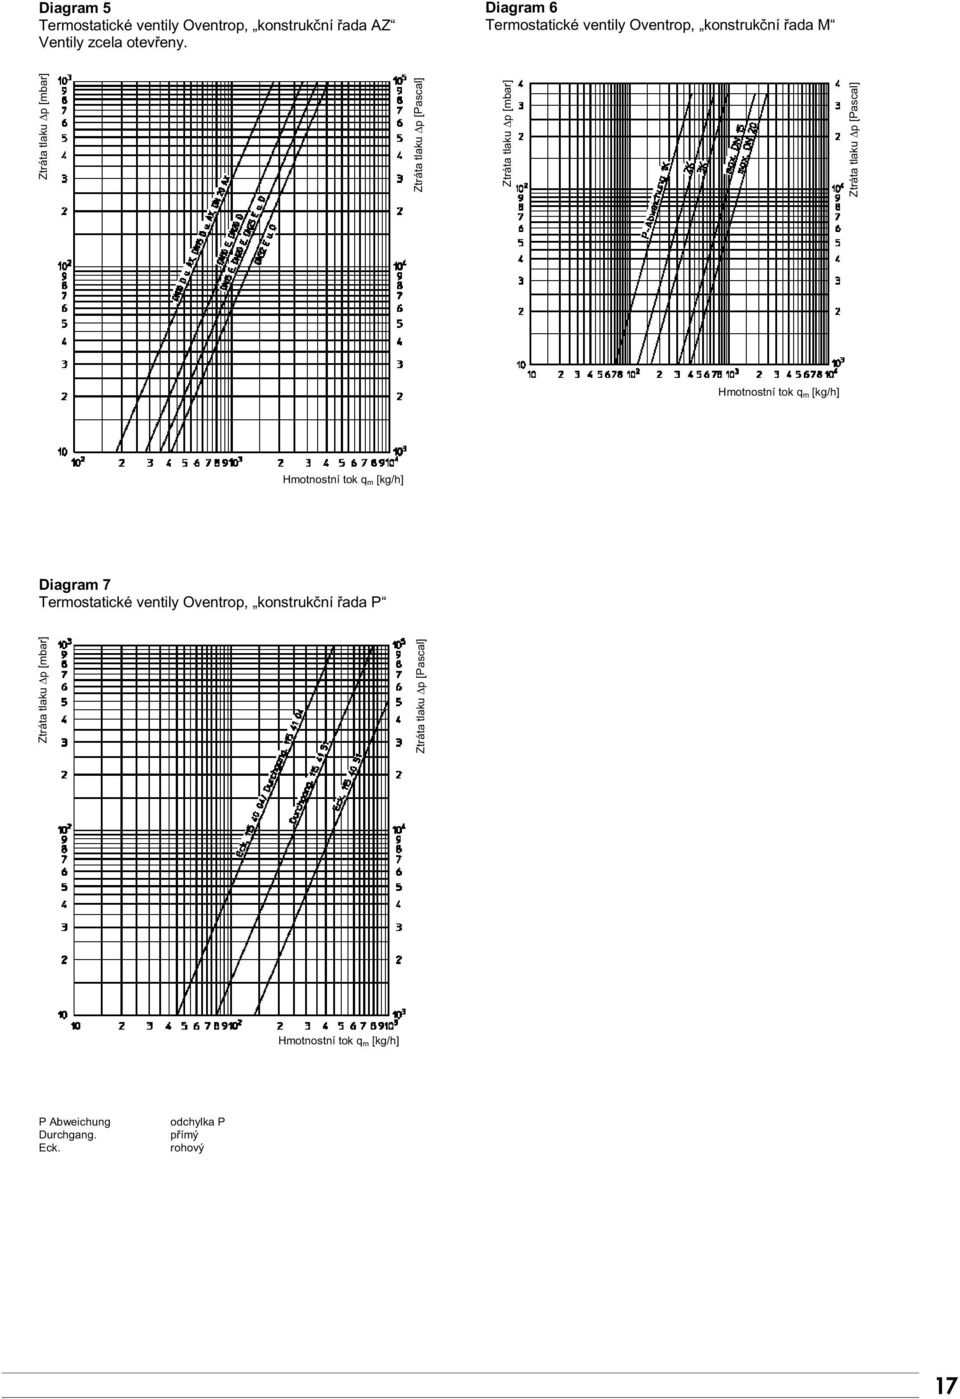 [Pascal] Ztráta tlaku Ip [mbar] Ztráta tlaku Ip [Pascal] Diagram 7 Termostatické ventily Oventrop,